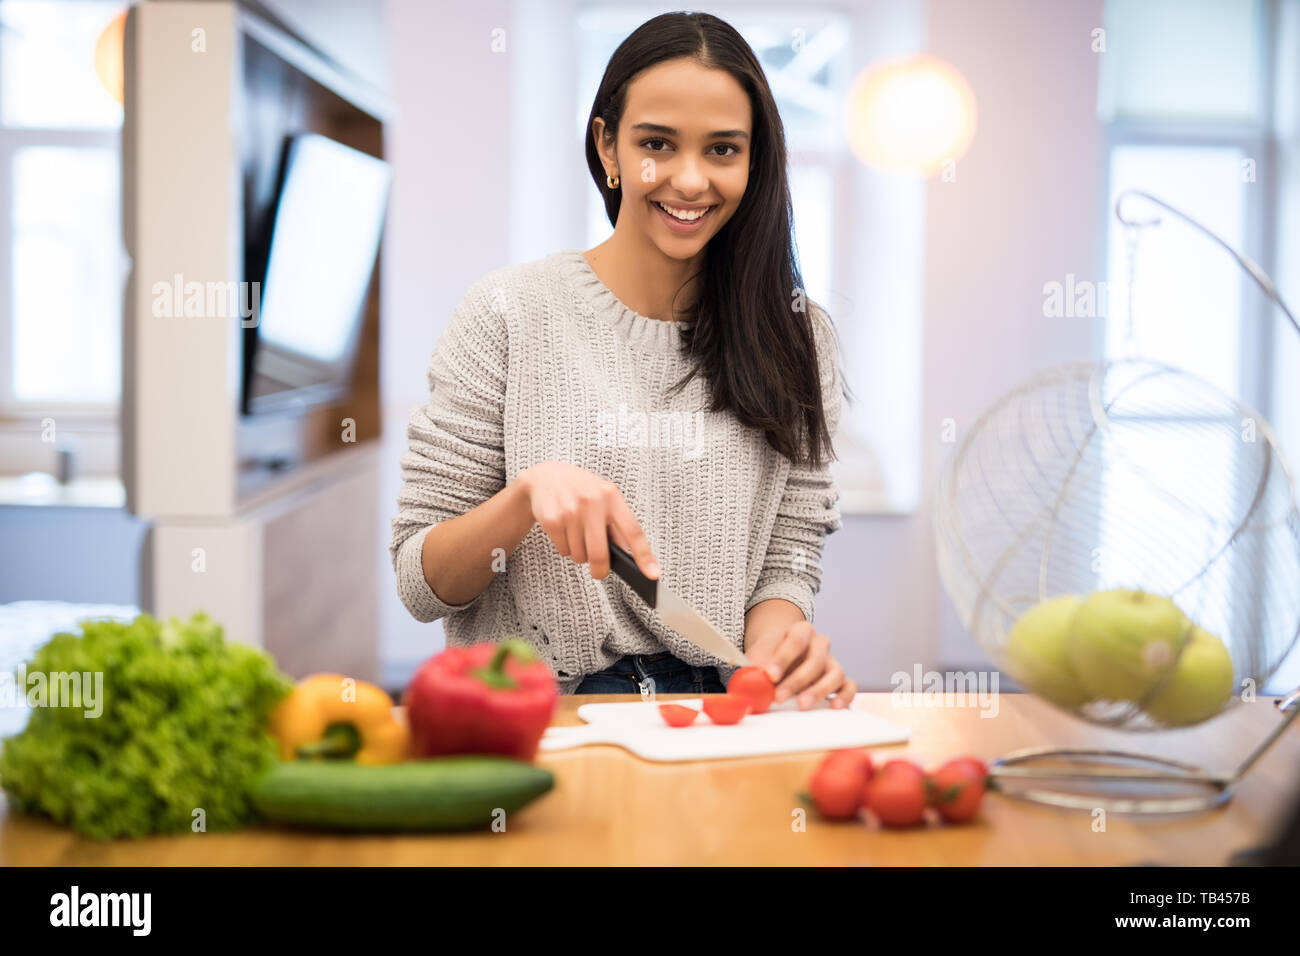 La jeune femme coupe des légumes dans la cuisine avec un couteau et un ordinateur portable sur la table. Salade de légumes. Régime alimentaire. Concept de suivre un régime. Mode de vie sain. Cookin Banque D'Images